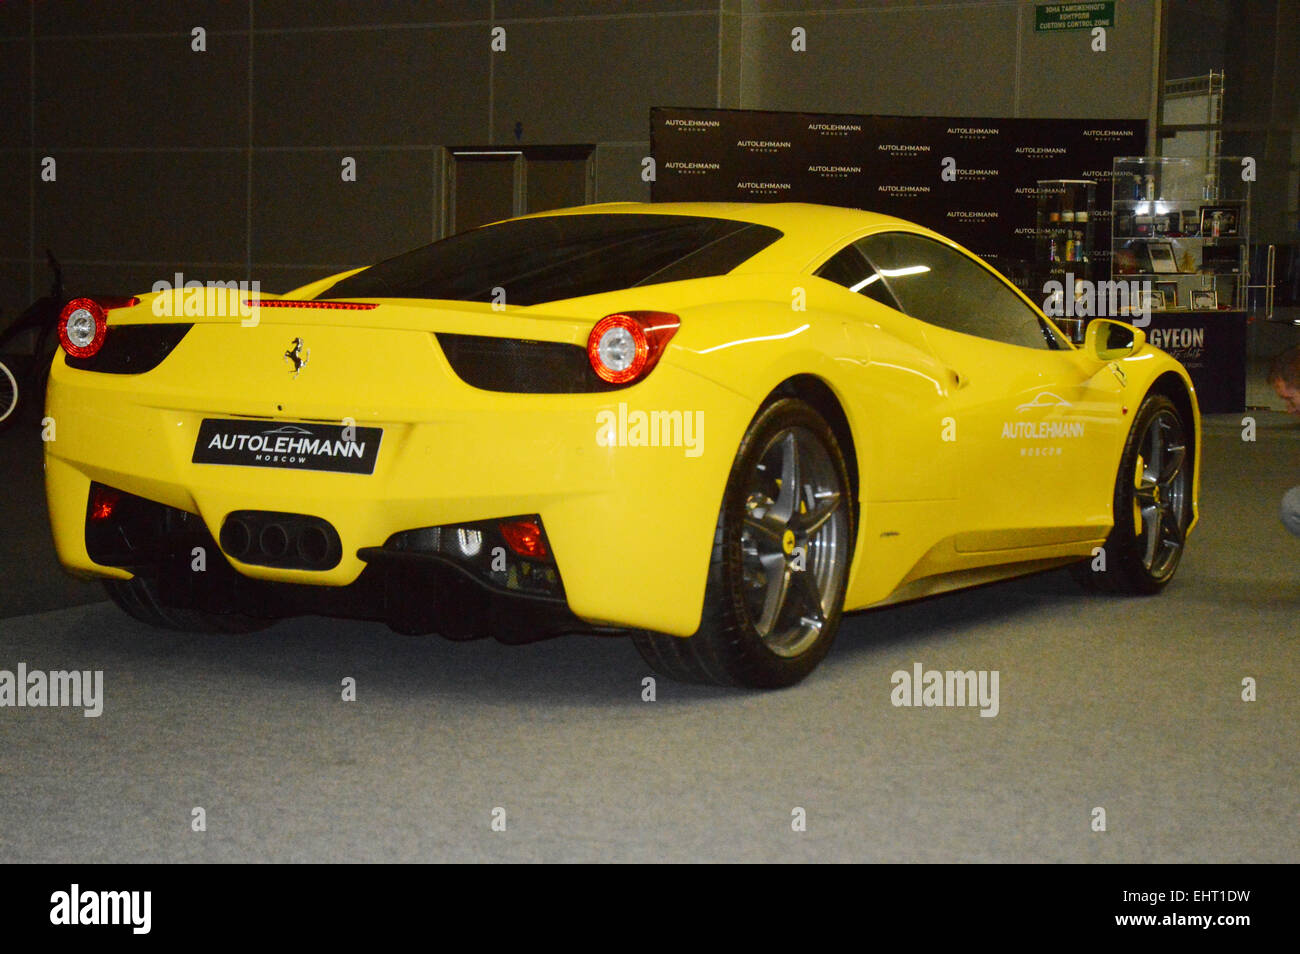 Ferrari gialle immagini e fotografie stock ad alta risoluzione - Alamy